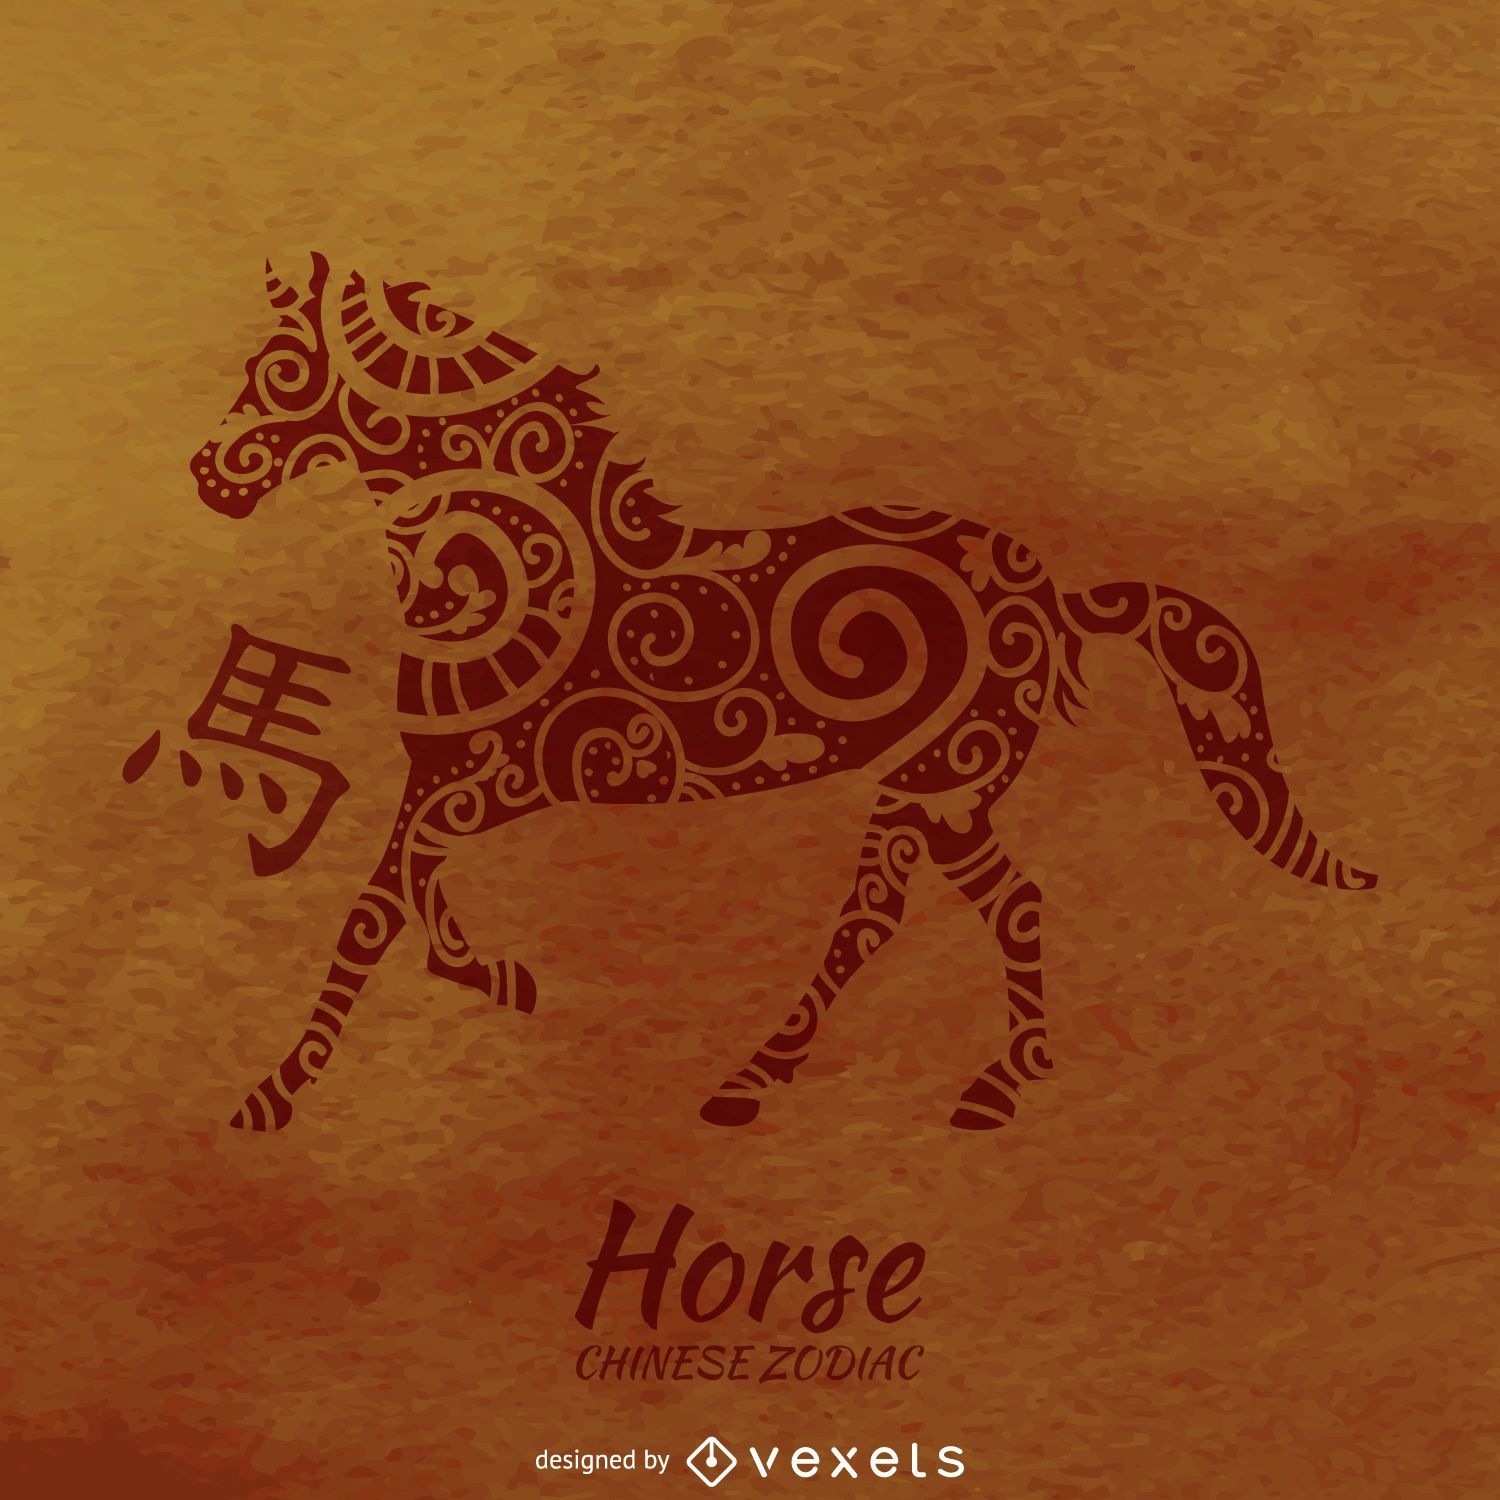 Dibujo de caballo del zodiaco chino